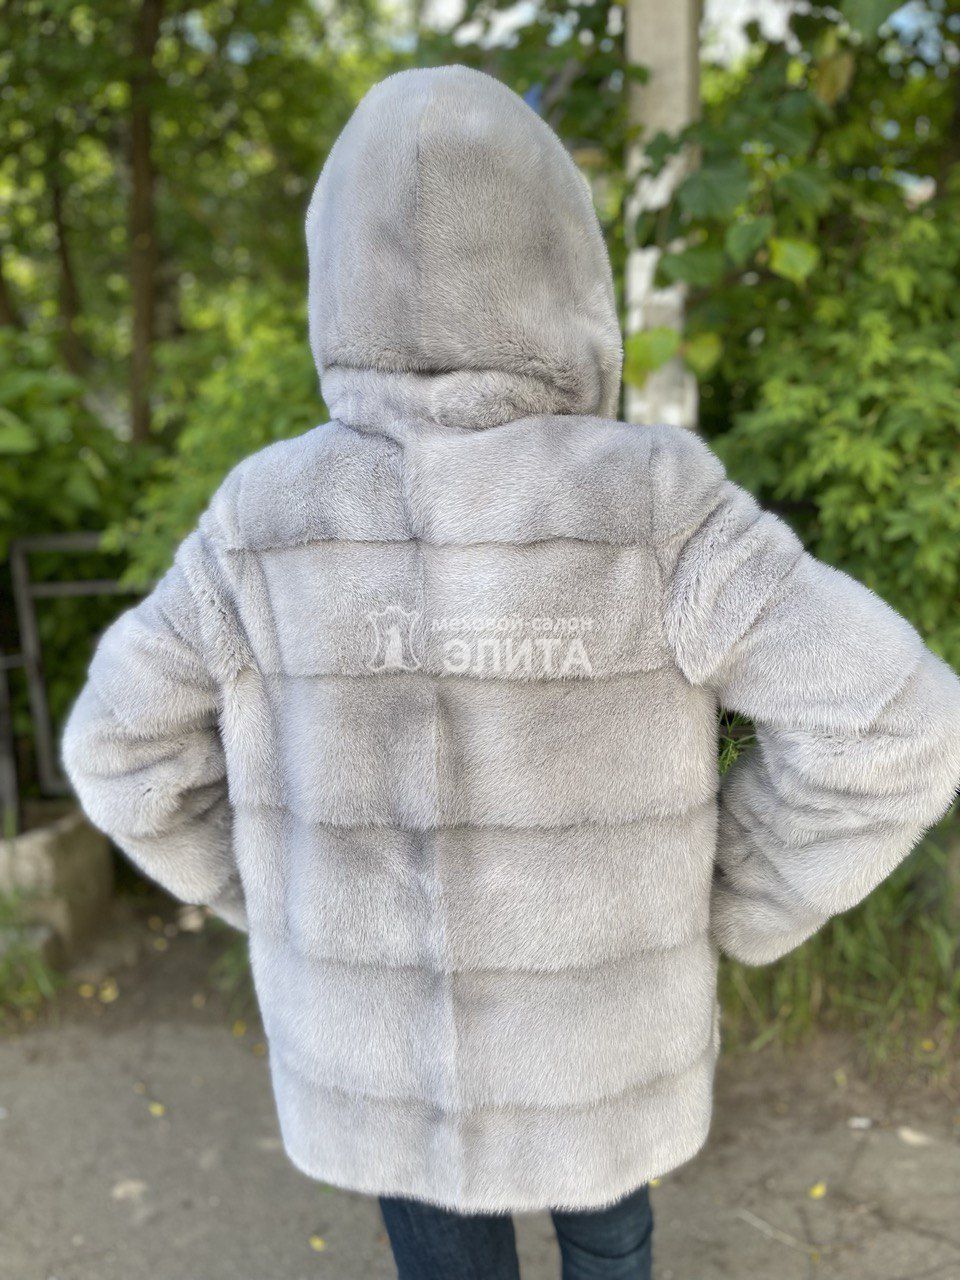 Куртка из норки S-1069, р-р 42-48, цена 78750 рублей в интернет-магазине кожи и меха ЭЛИТА. Вид 2